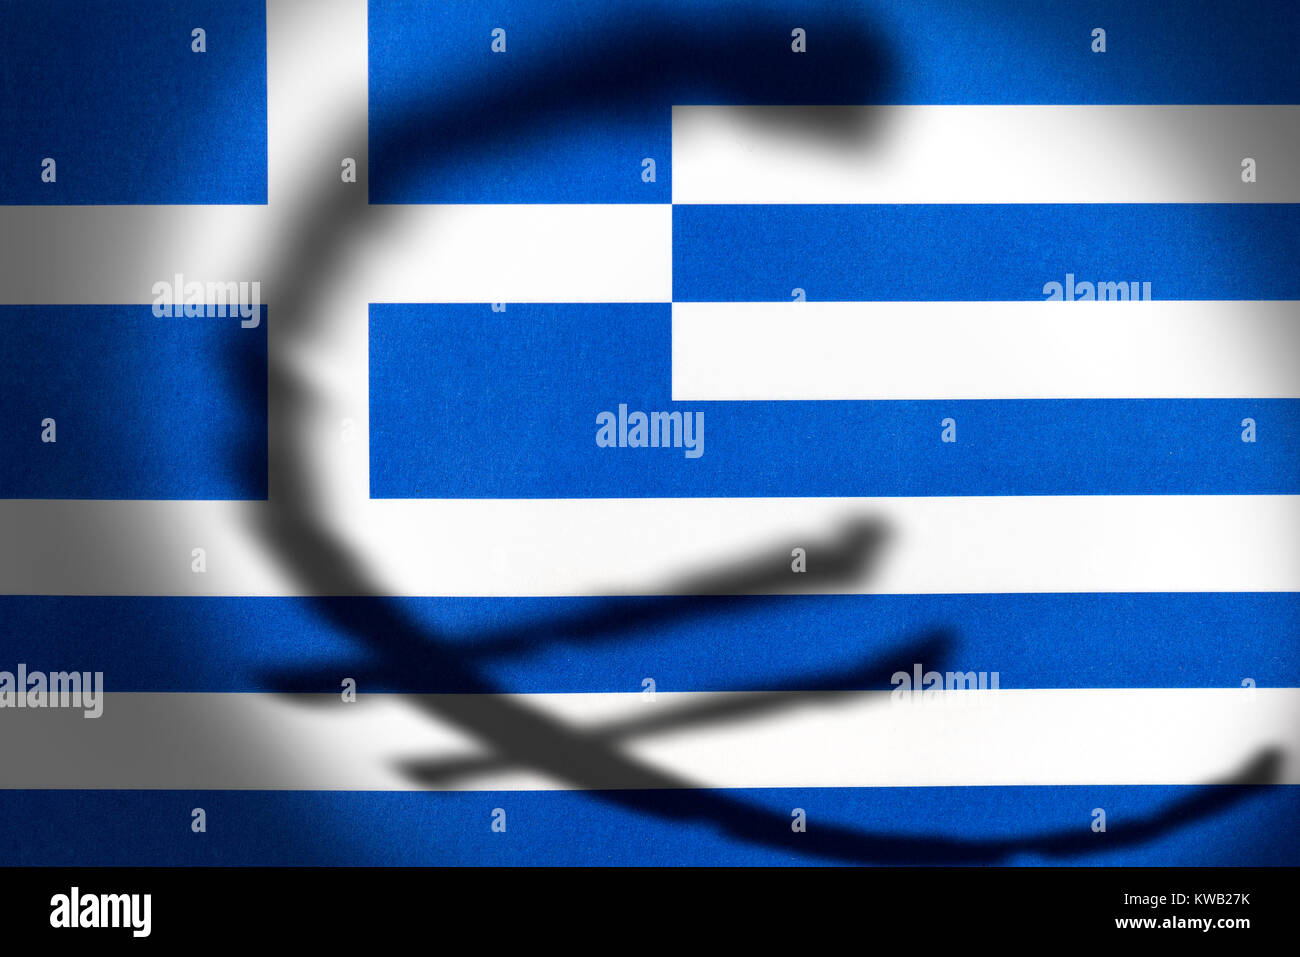 Farbtöne eines eurosign auf einer griechischen Flagge, symbolische Foto eurocrisis, Schatten des Eurozeichens in einer griechischen Fahne, Symbolfoto Eurokrise Stockfoto